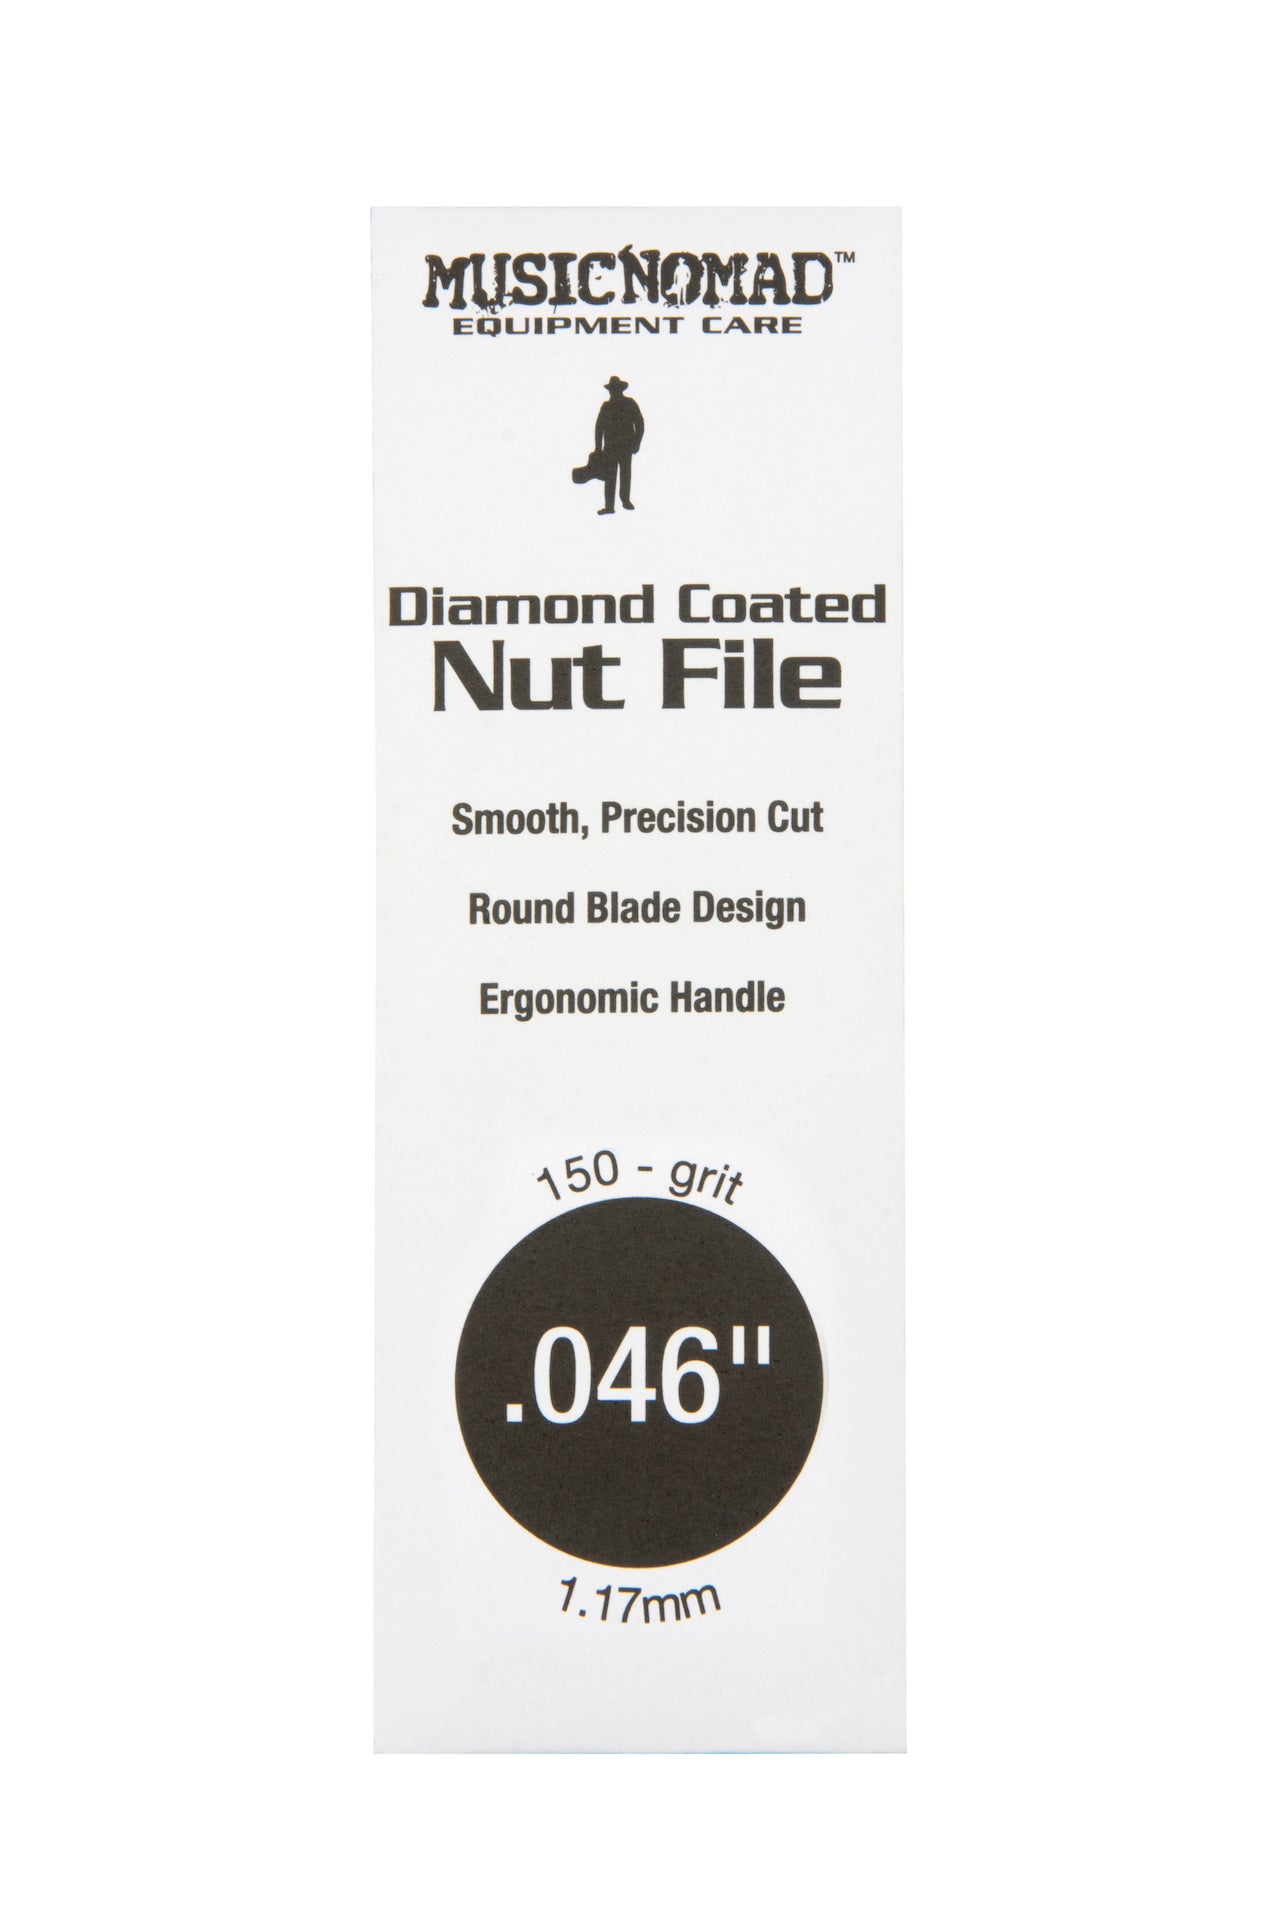 Music Nomad Diamond Coated Nut File Singles - HIENDGUITAR .046" .046" musicnomad musicnomad